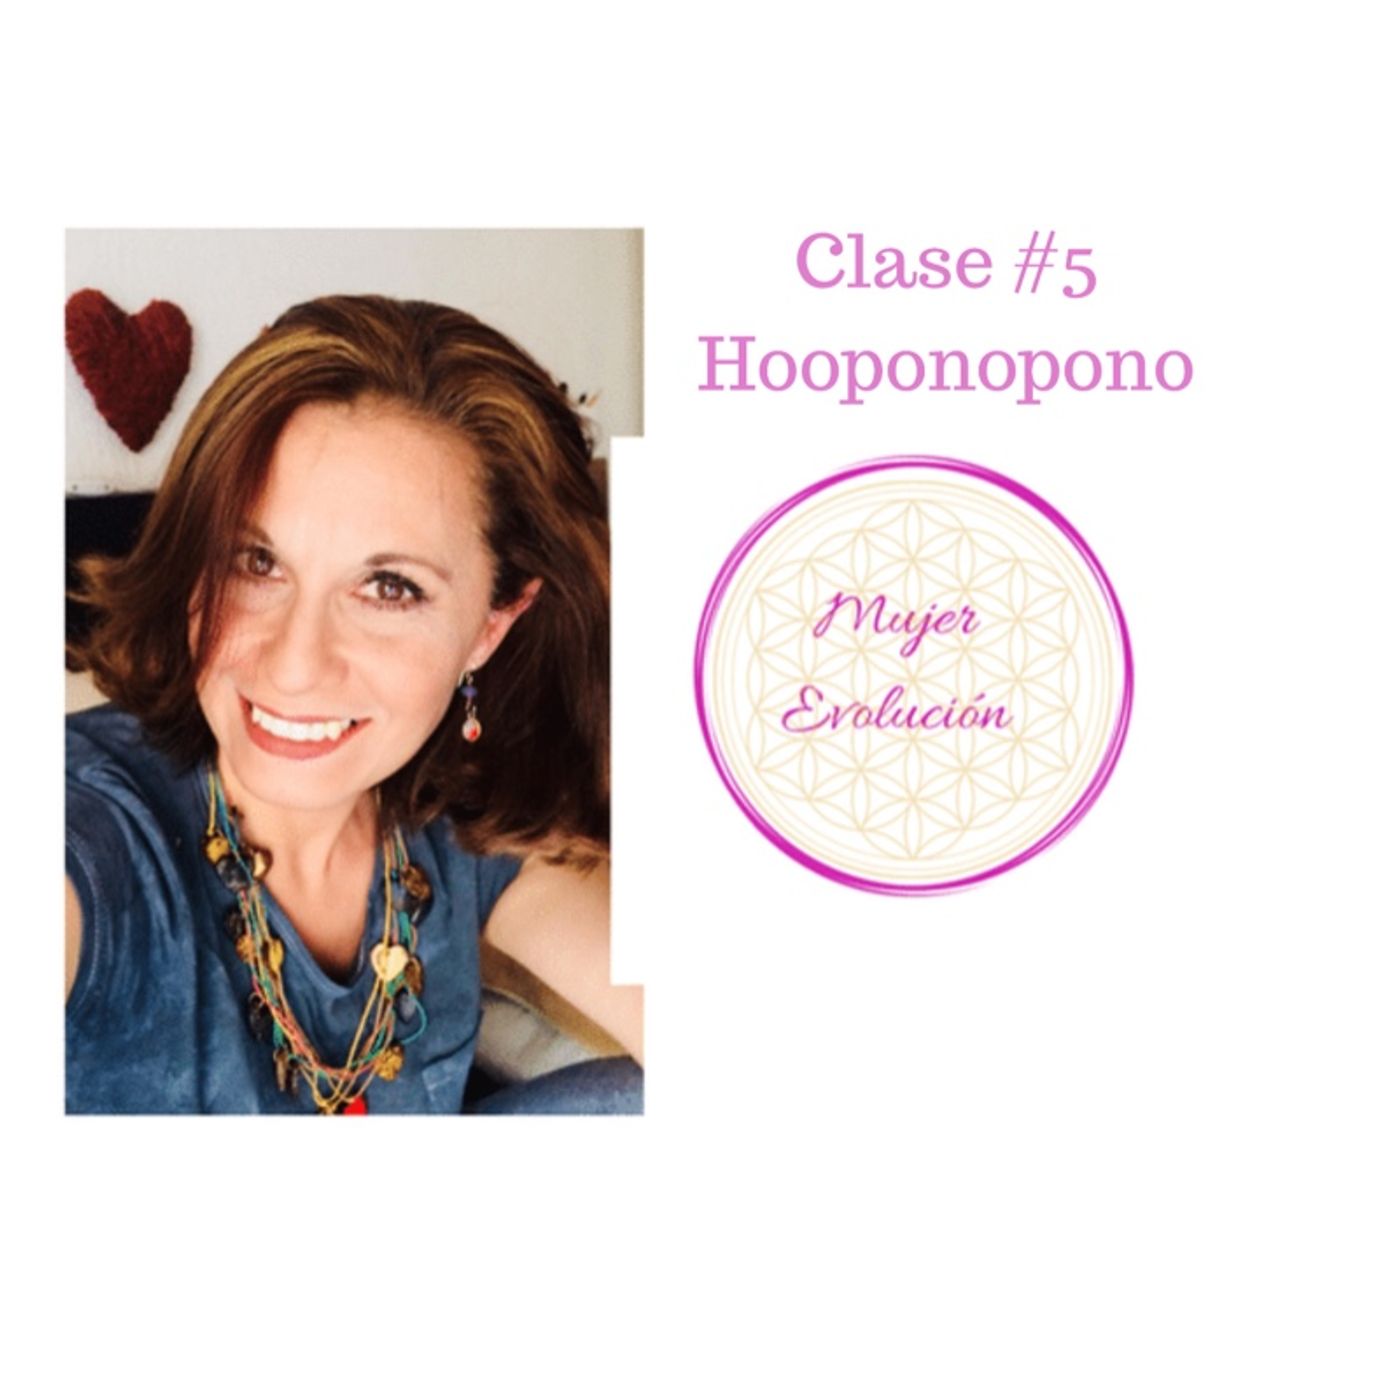 Clase #5 semana especial HOOPONOPONO